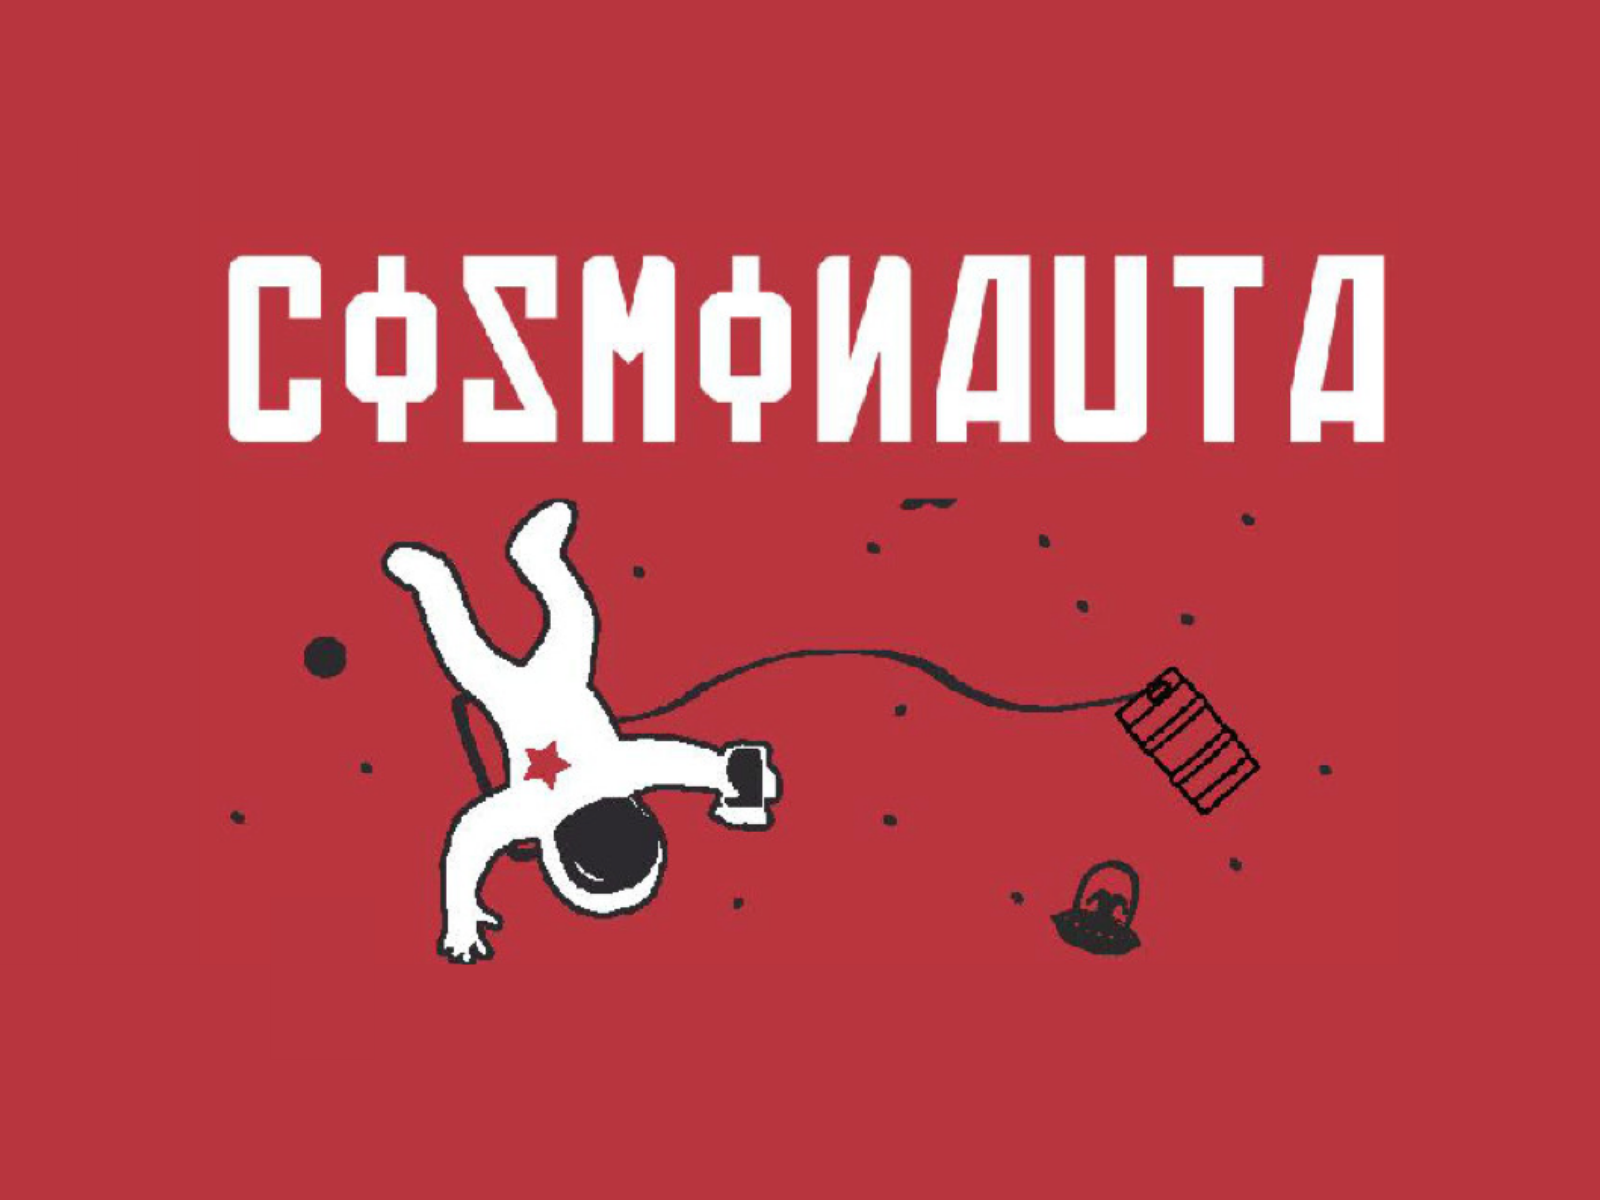 logo cosmonauta lanza gianni morbegno